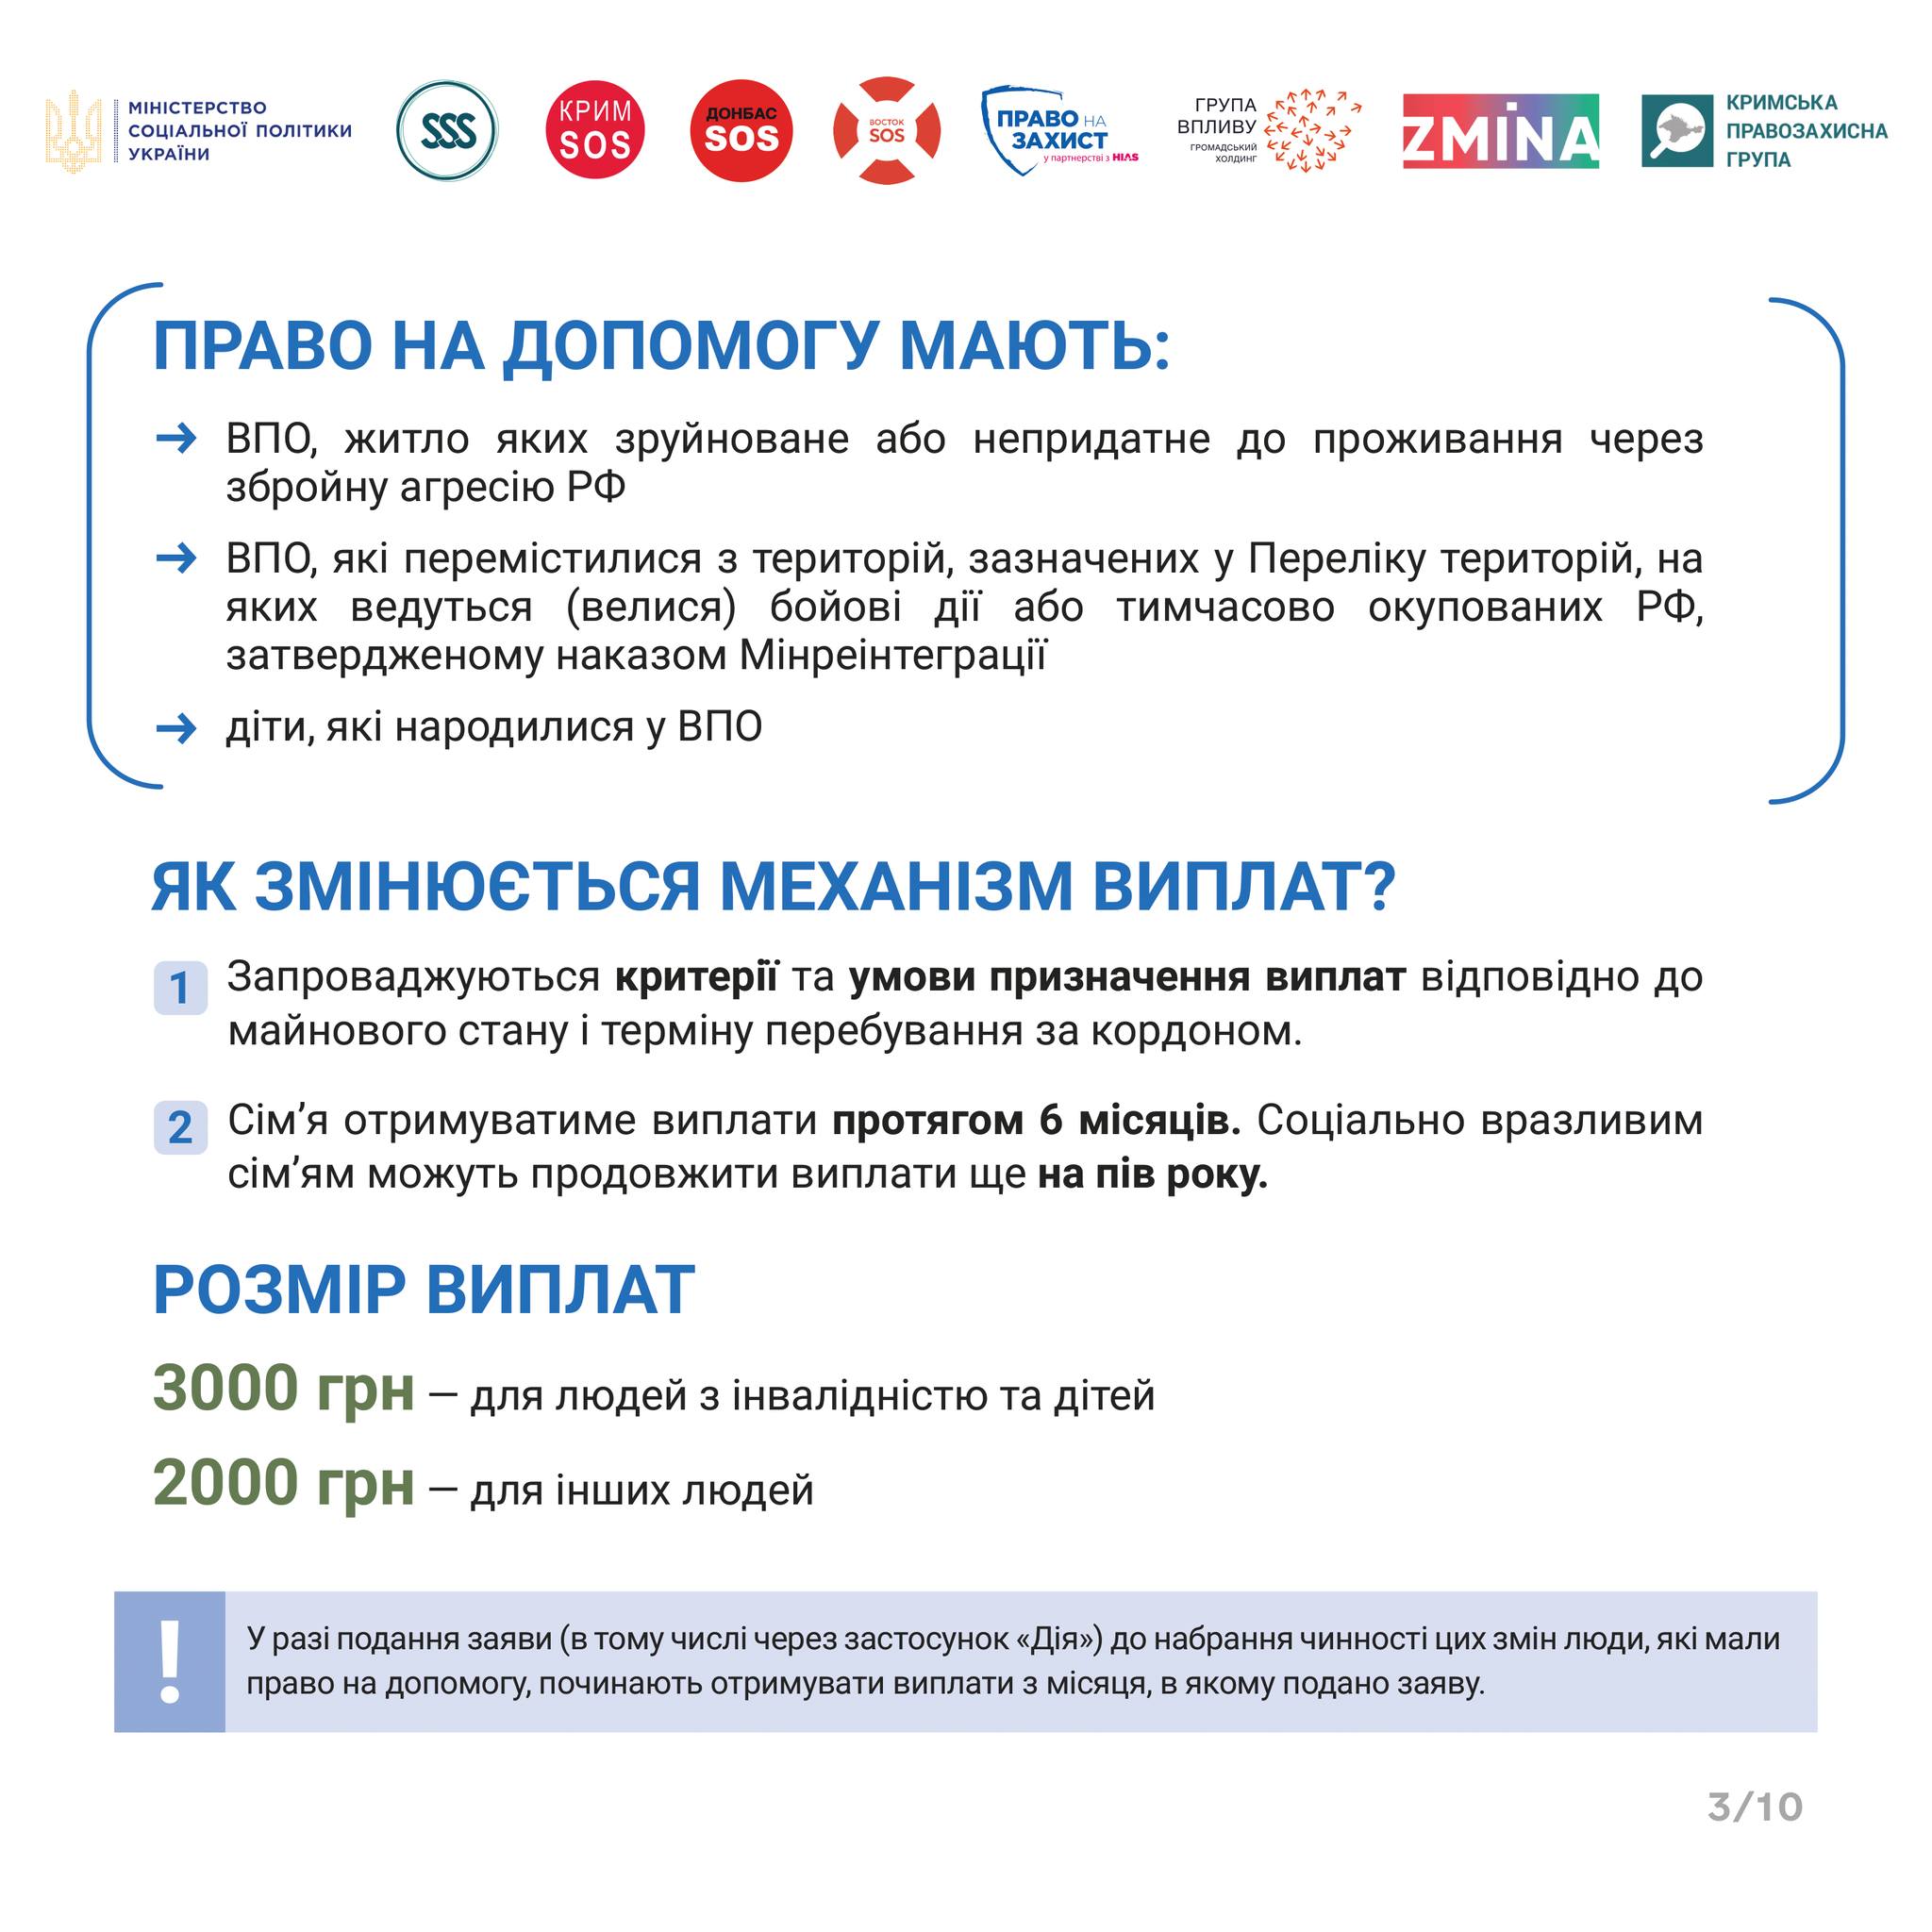 Министерство социальной политики Украины